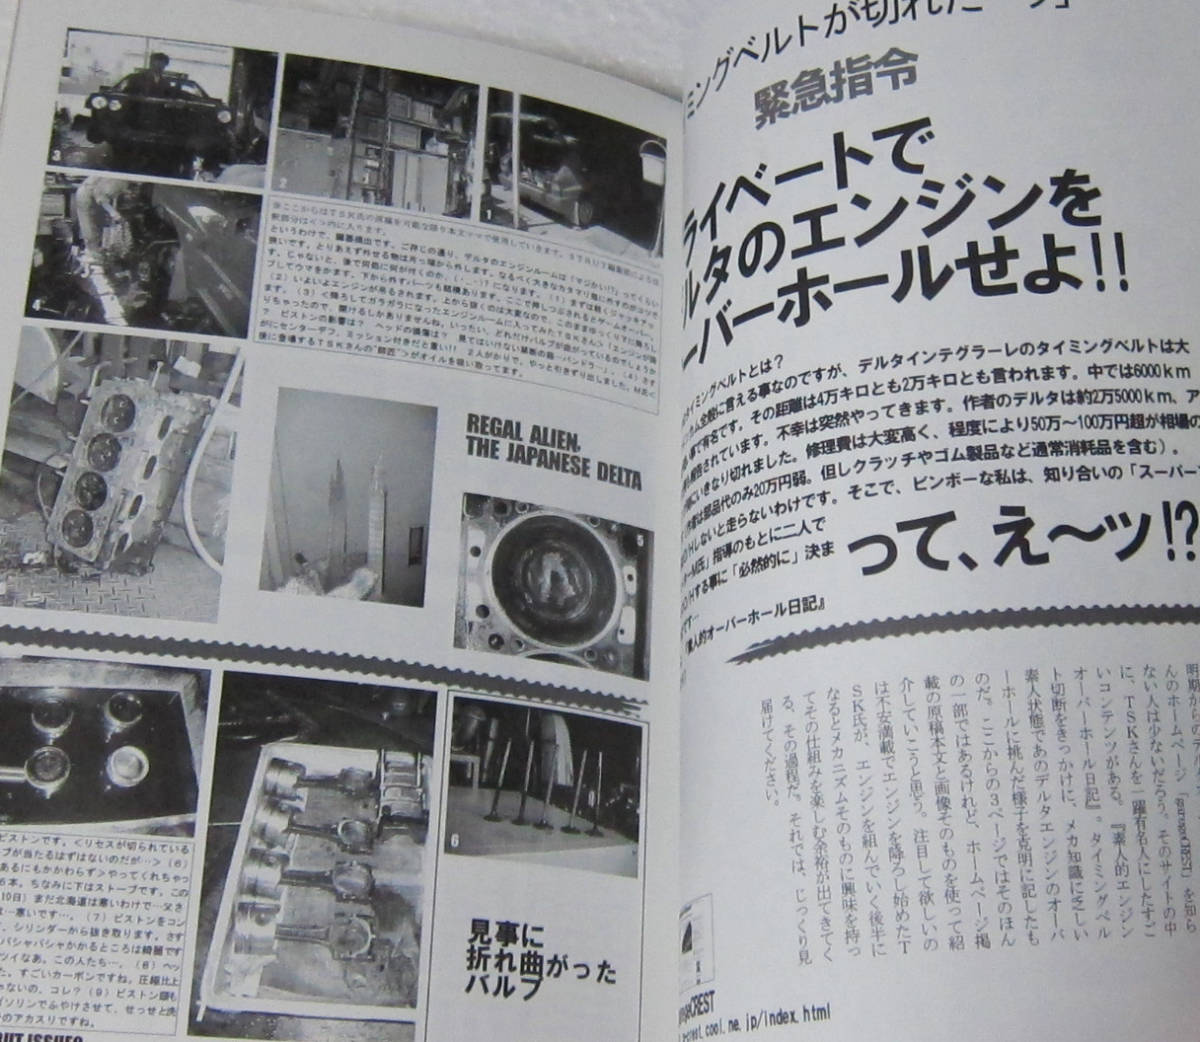 //エンスーCAR本 STRUT ISSUE01 特集 ニッポンのランチア・デルタHFインテグラーレの画像3